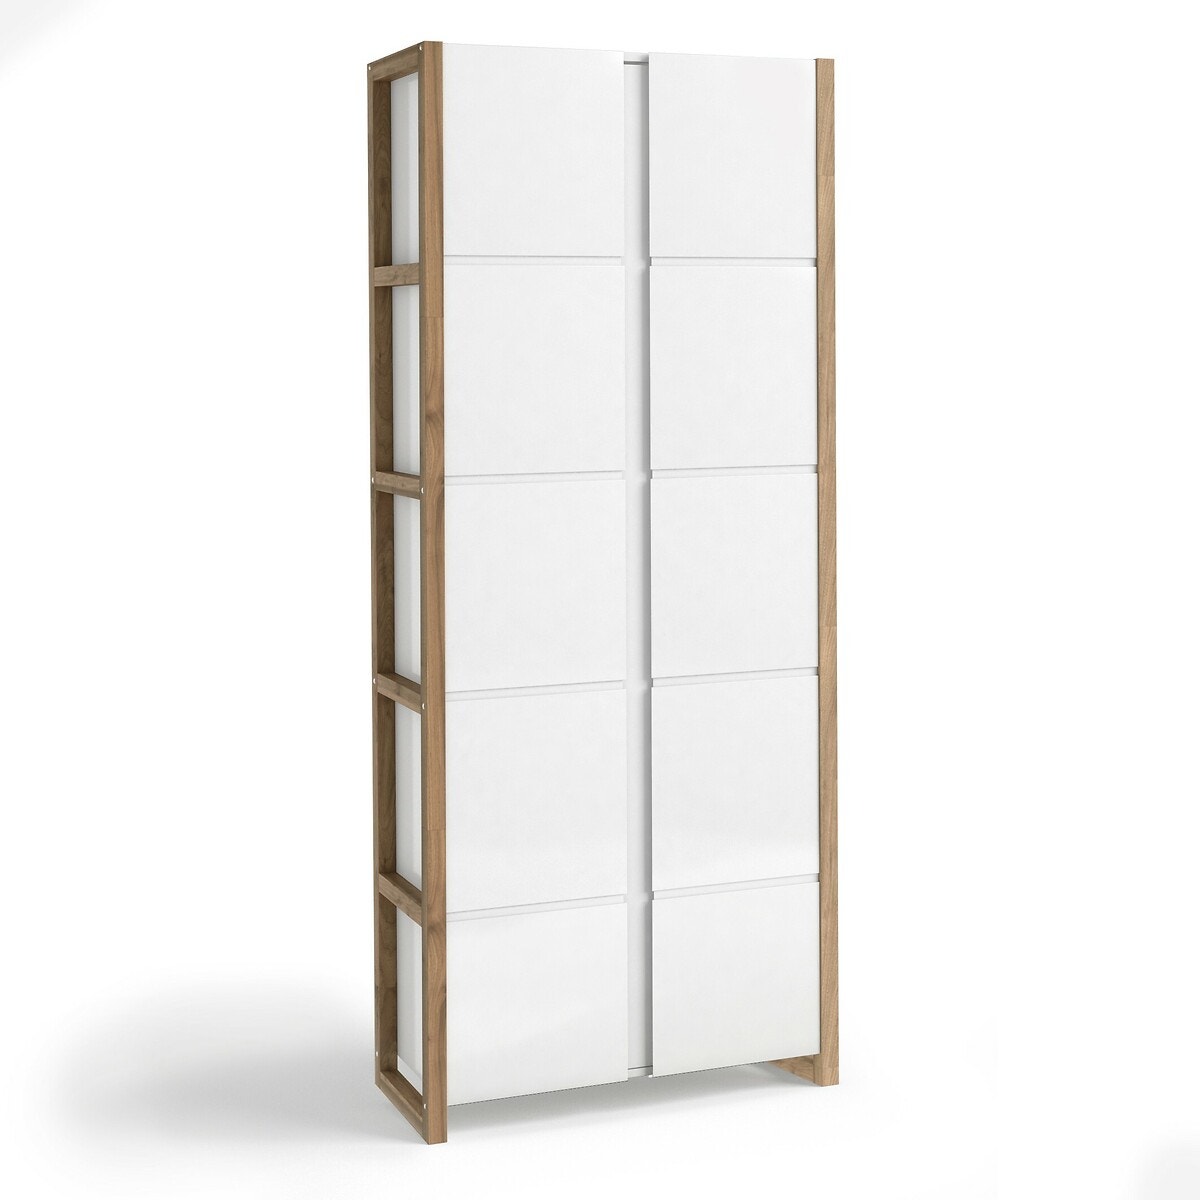 Armoires avec portes, armoires murales, bibliothèques - IKEA CA